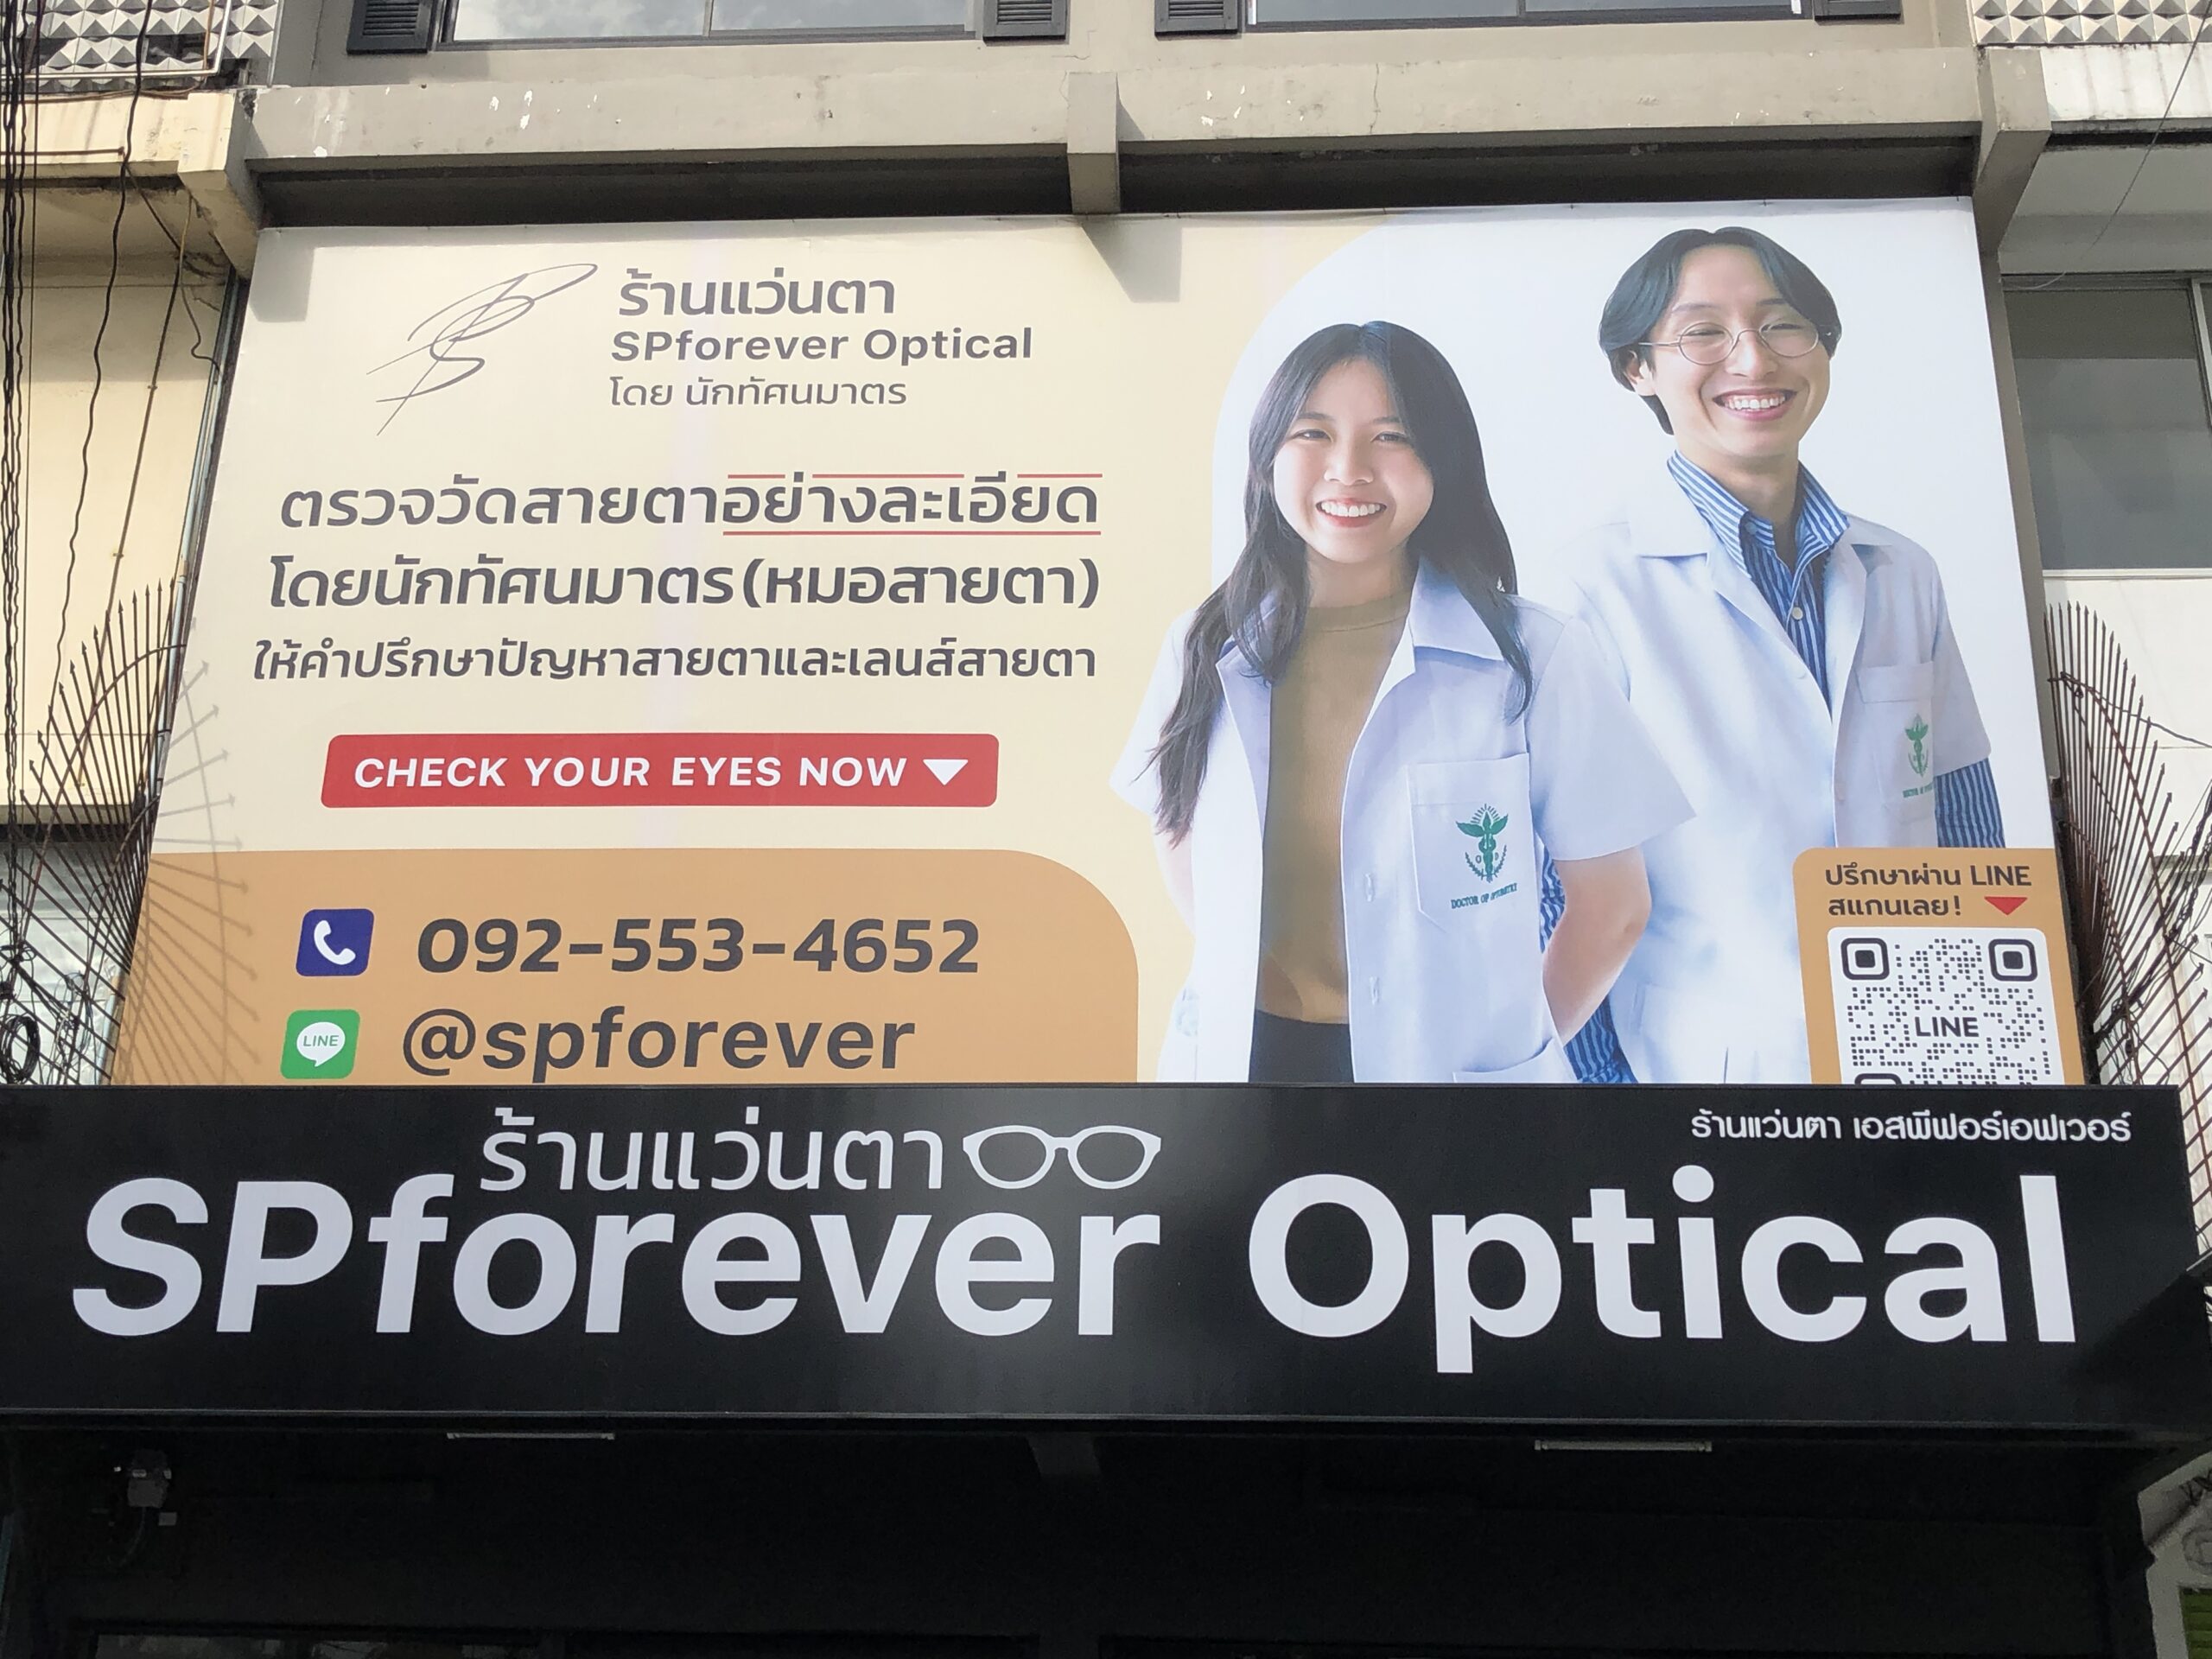 Spforever Thailand Opticians, eyestest